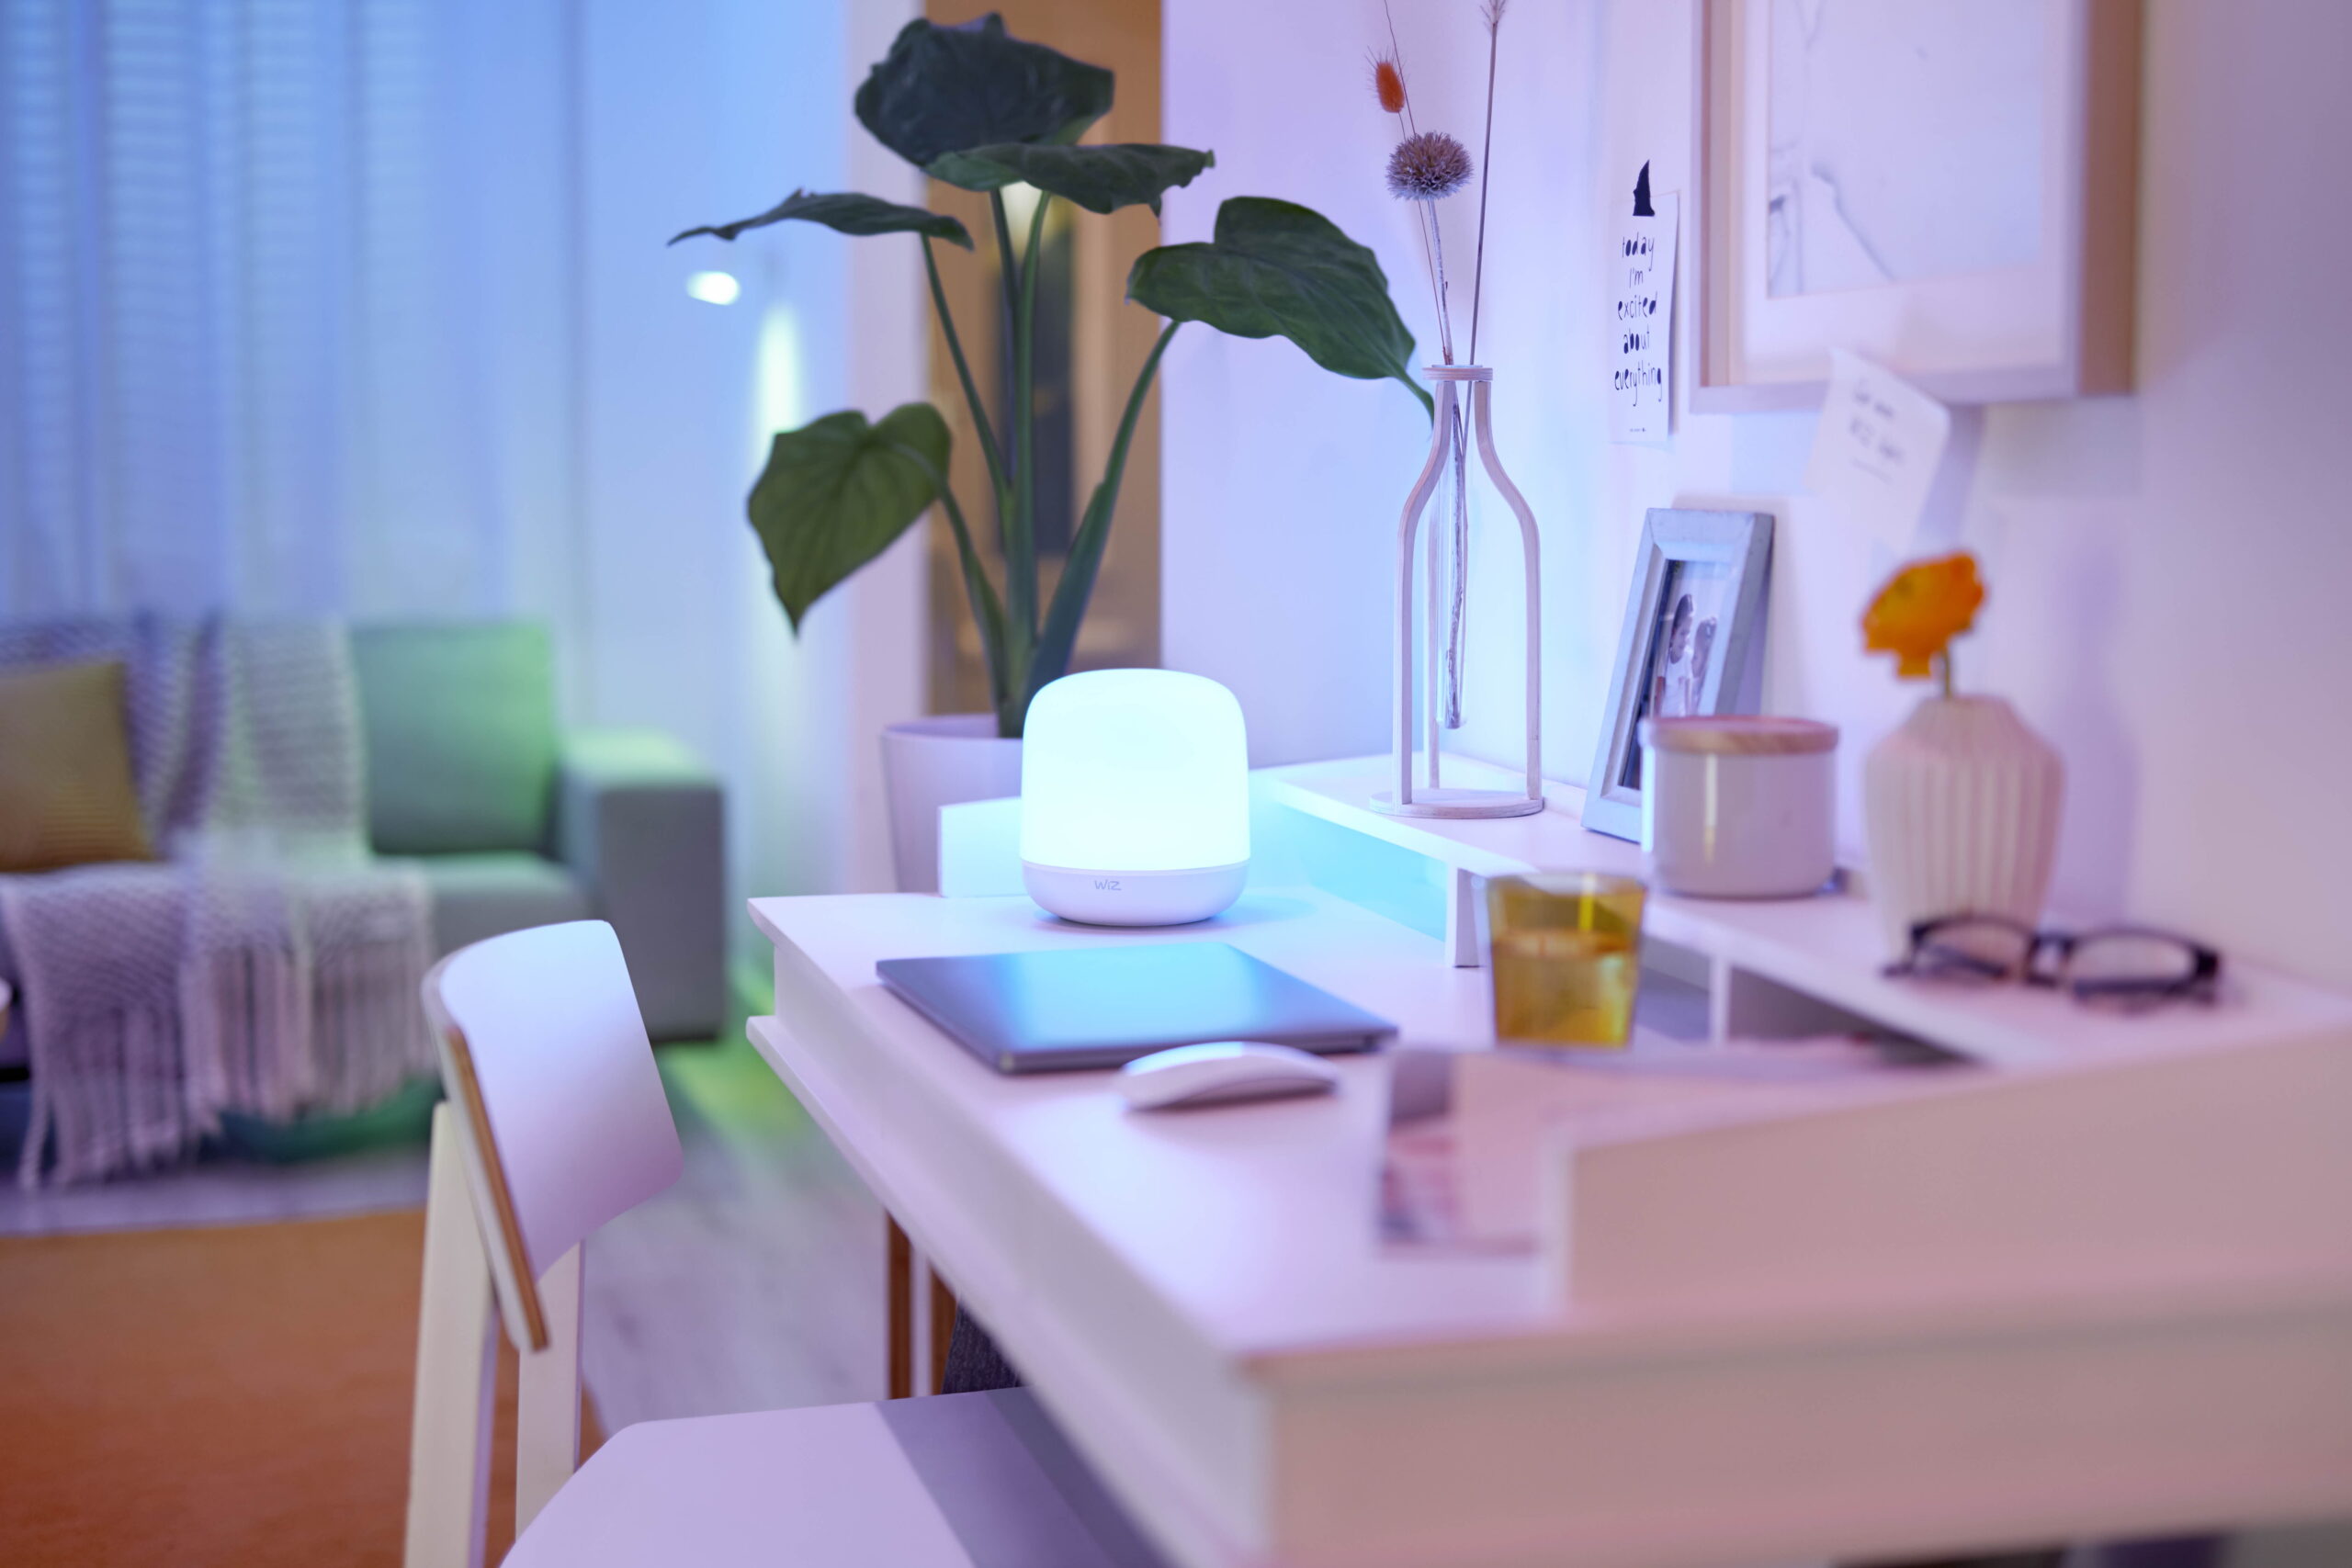 Signify presenta una nueva gama de productos de iluminación inteligente WiZ para la vida diaria. Con el ecosistema WiZ y sus nuevos productos